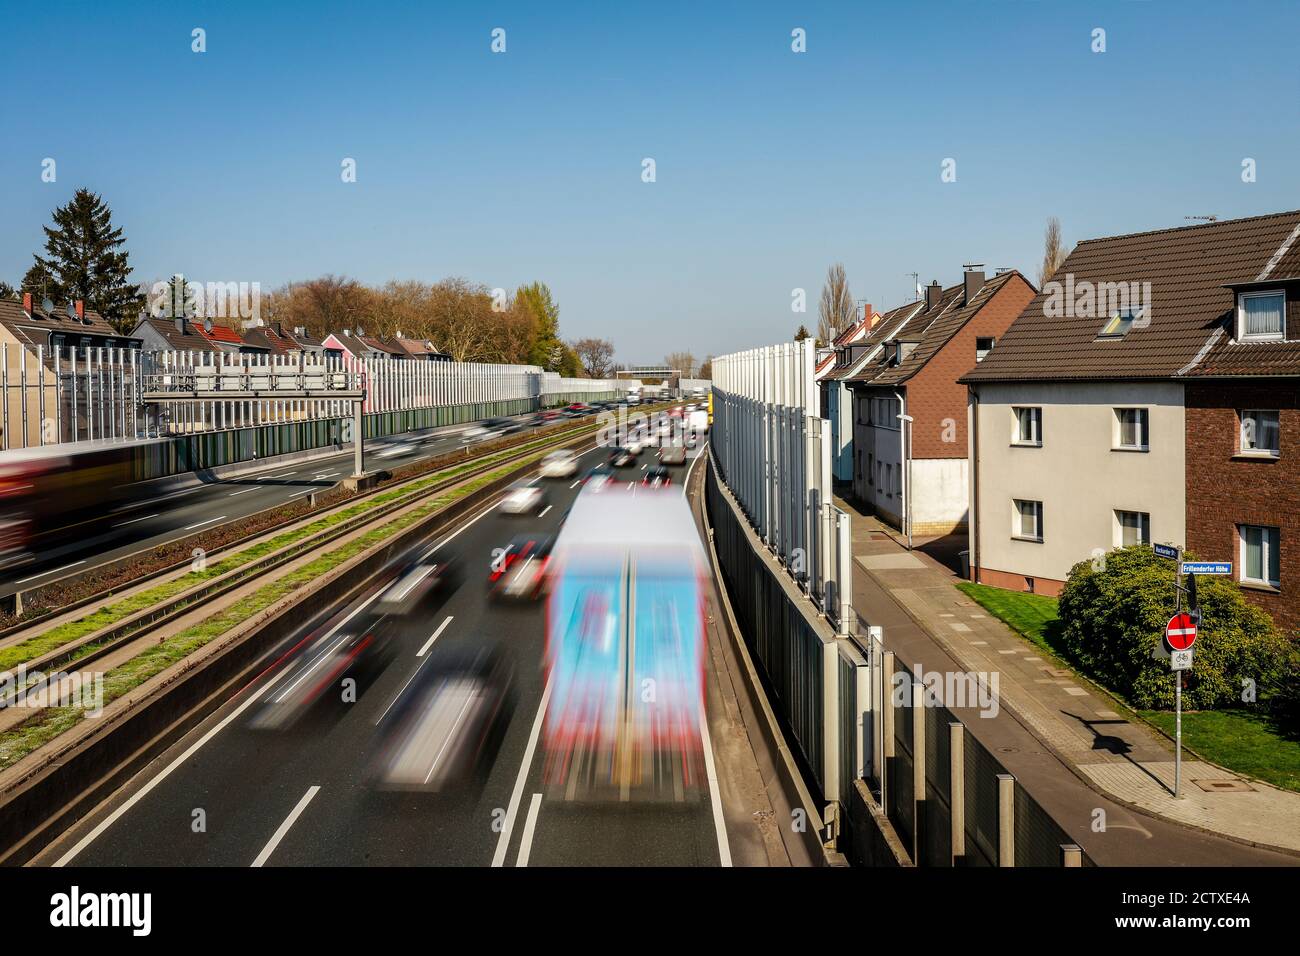 Essen, Ruhr Area, Renania Settentrionale-Vestfalia, Germania - traffico di punta sulla superstrada A40, una barriera antirumore riduce l'inquinamento acustico per i residenti. Foto Stock